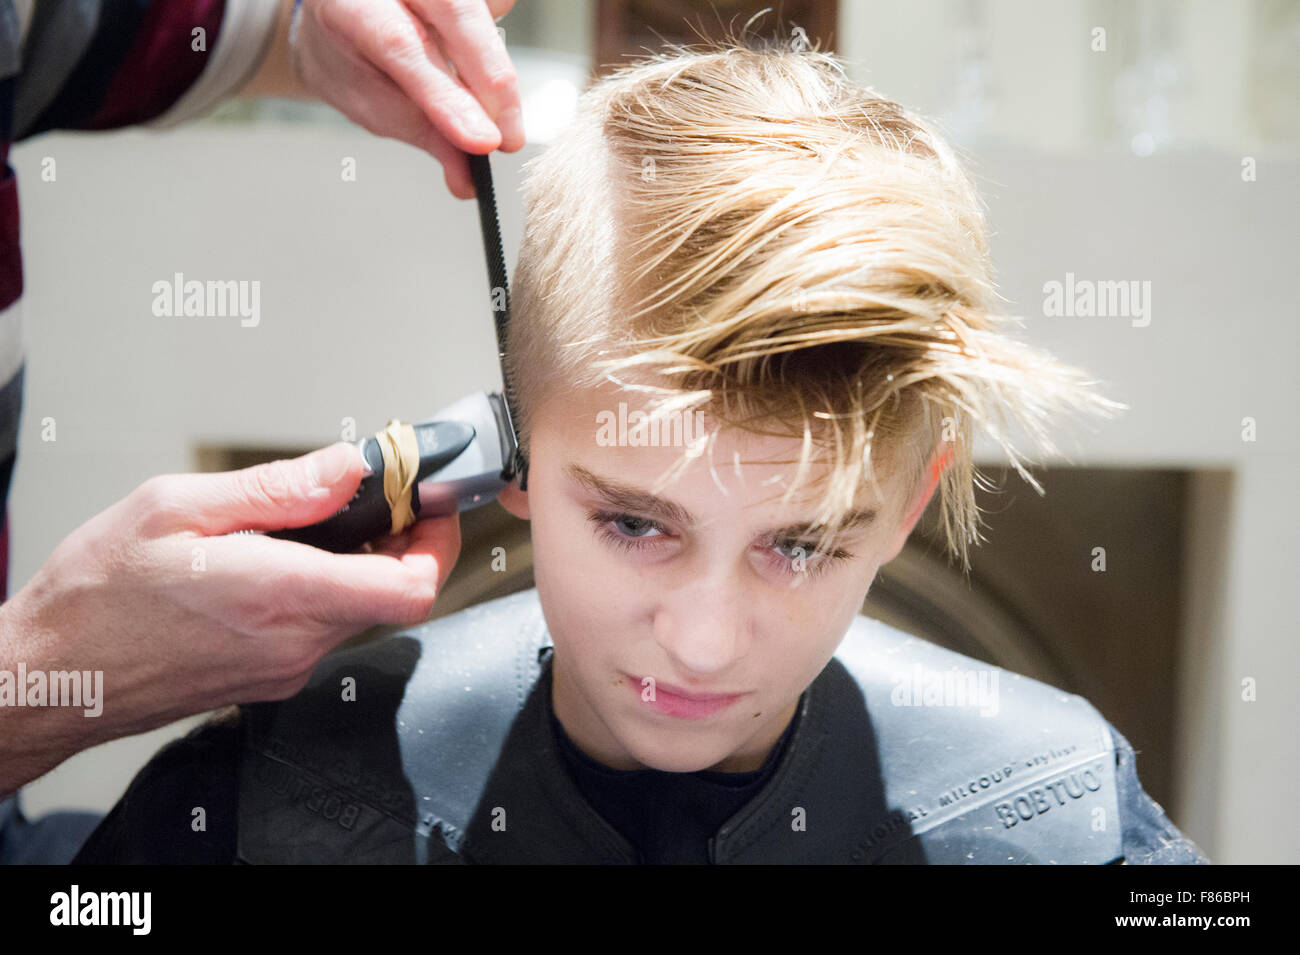 A blond boy has his hair cut Stock Photo